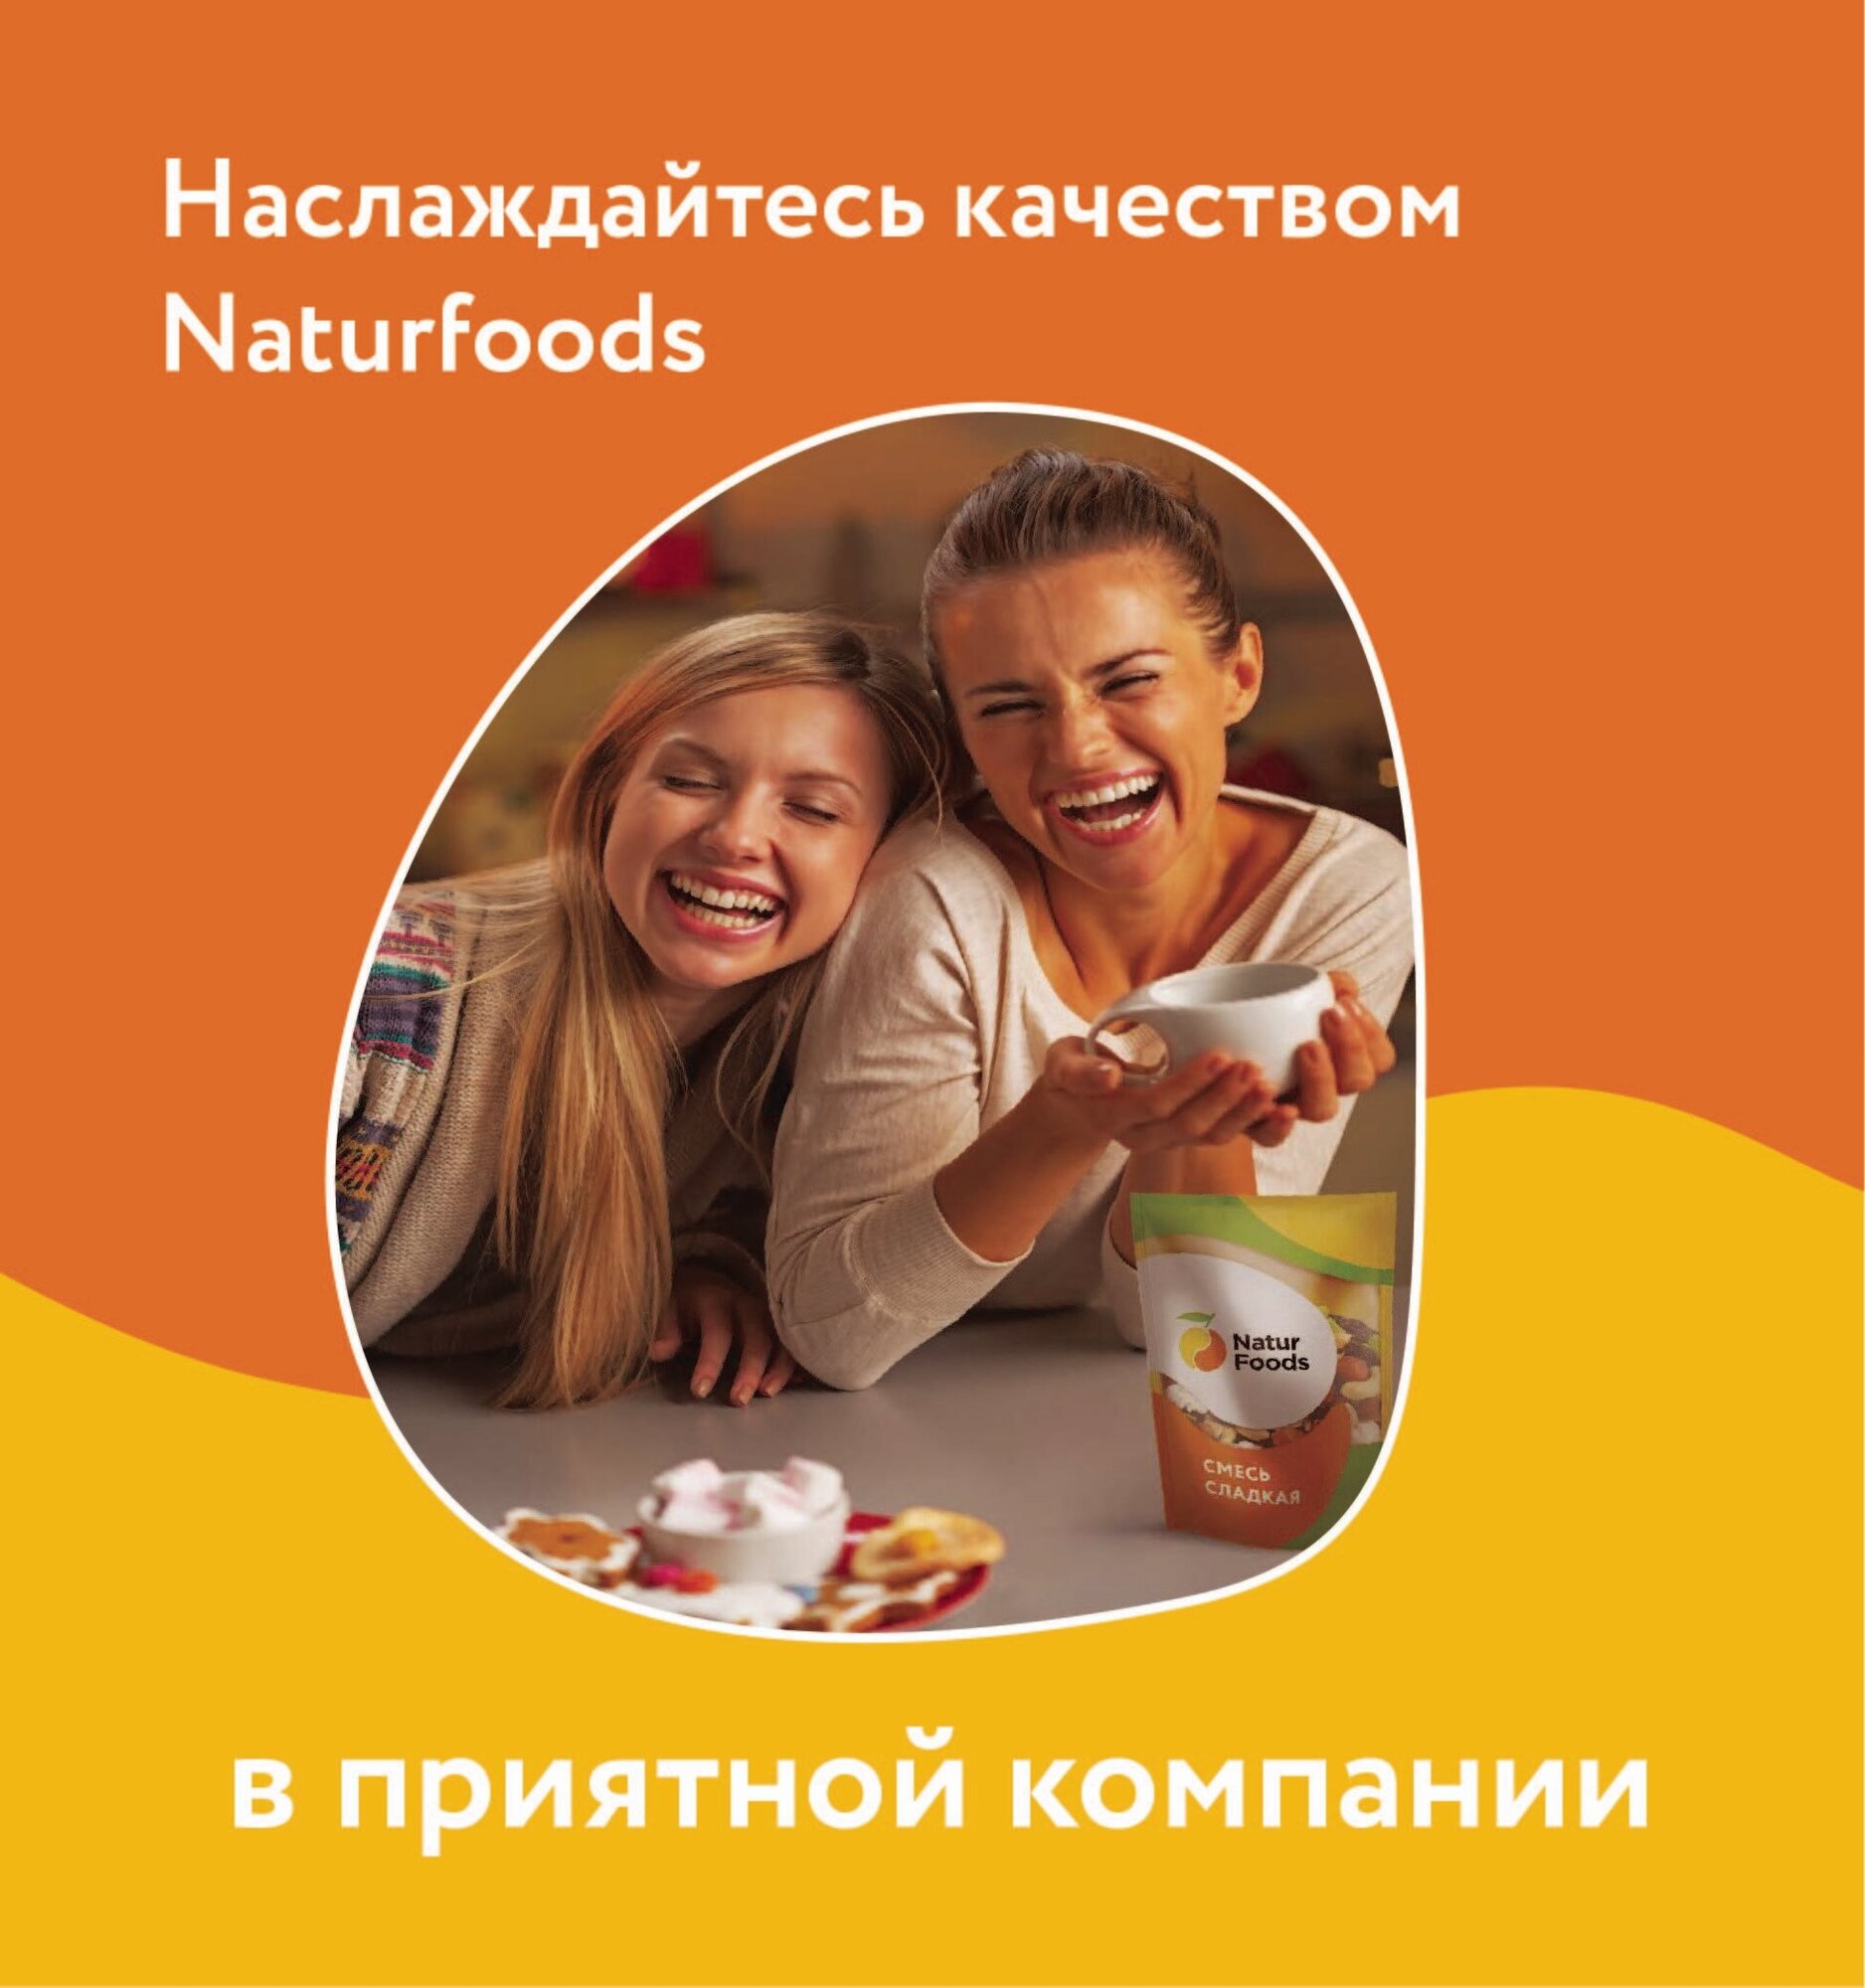 Орехово-фруктовая смесь "Ассорти", Naturfoods, 500 гр